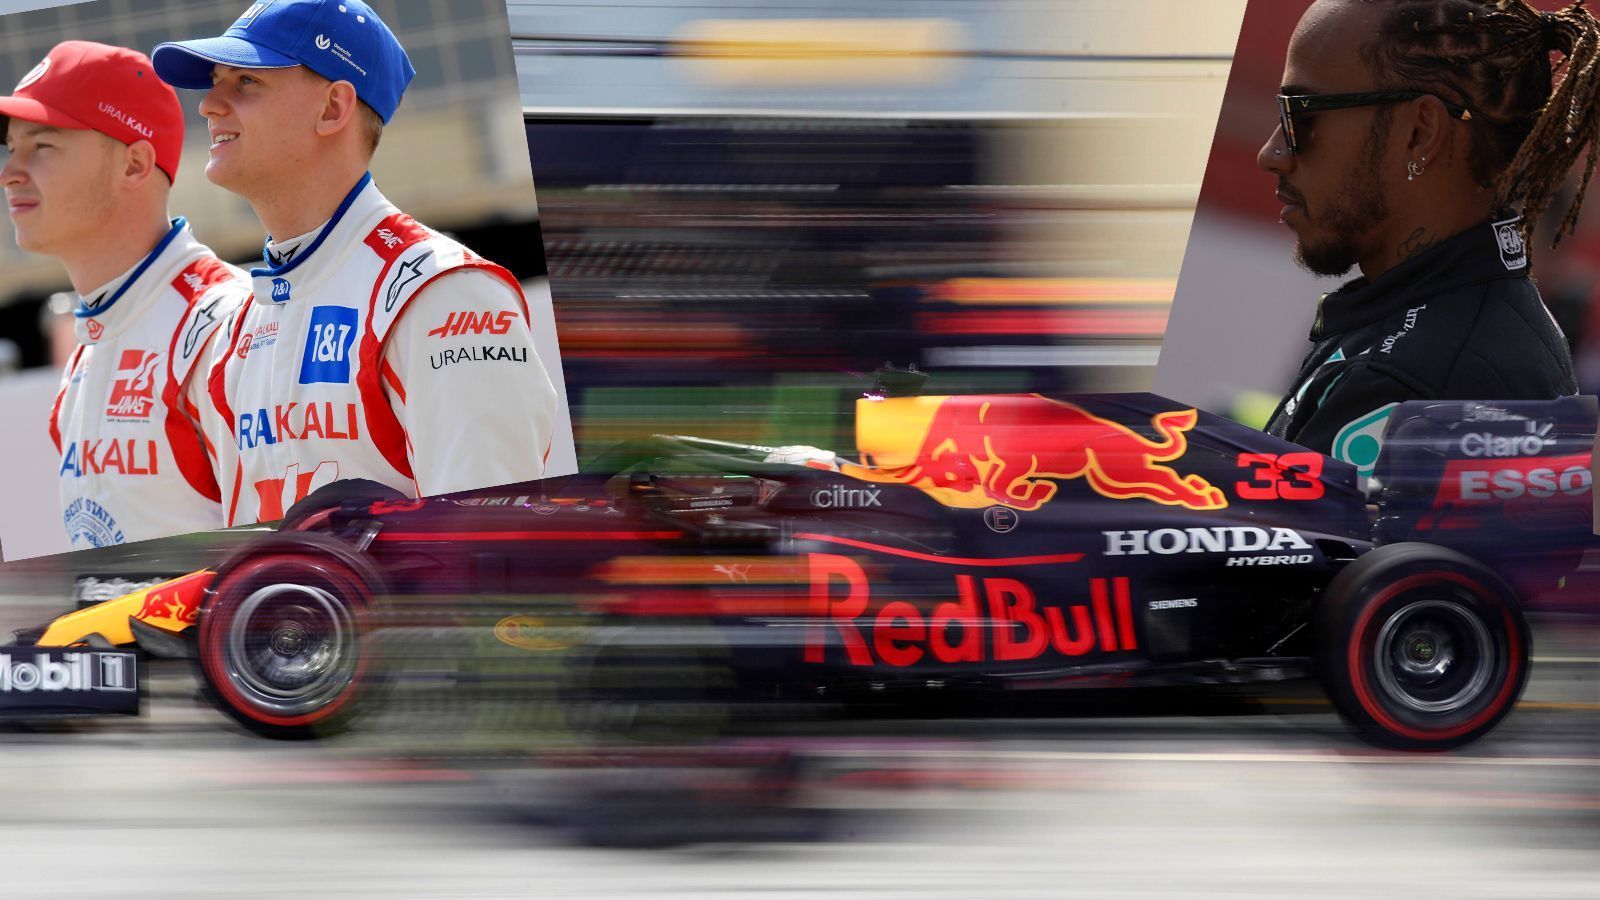 
                <strong>Formel 1: Die Gewinner und Verlierer der Bahrain-Tests</strong><br>
                Drei Tage lang konnten die Formel-1-Teams in Bahrain testen, ehe an selber Stelle am 28. März das erste Saisonrennen ansteht. Während Mercedes strauchelte, glänzte Max Verstappens neuer Red Bull. Mick Schumacher beeindruckte seinen Teamchef, Sebastian Vettel blieb das Pech treu. Die Gewinner und Verlierer der Bahrain-Tests.
              